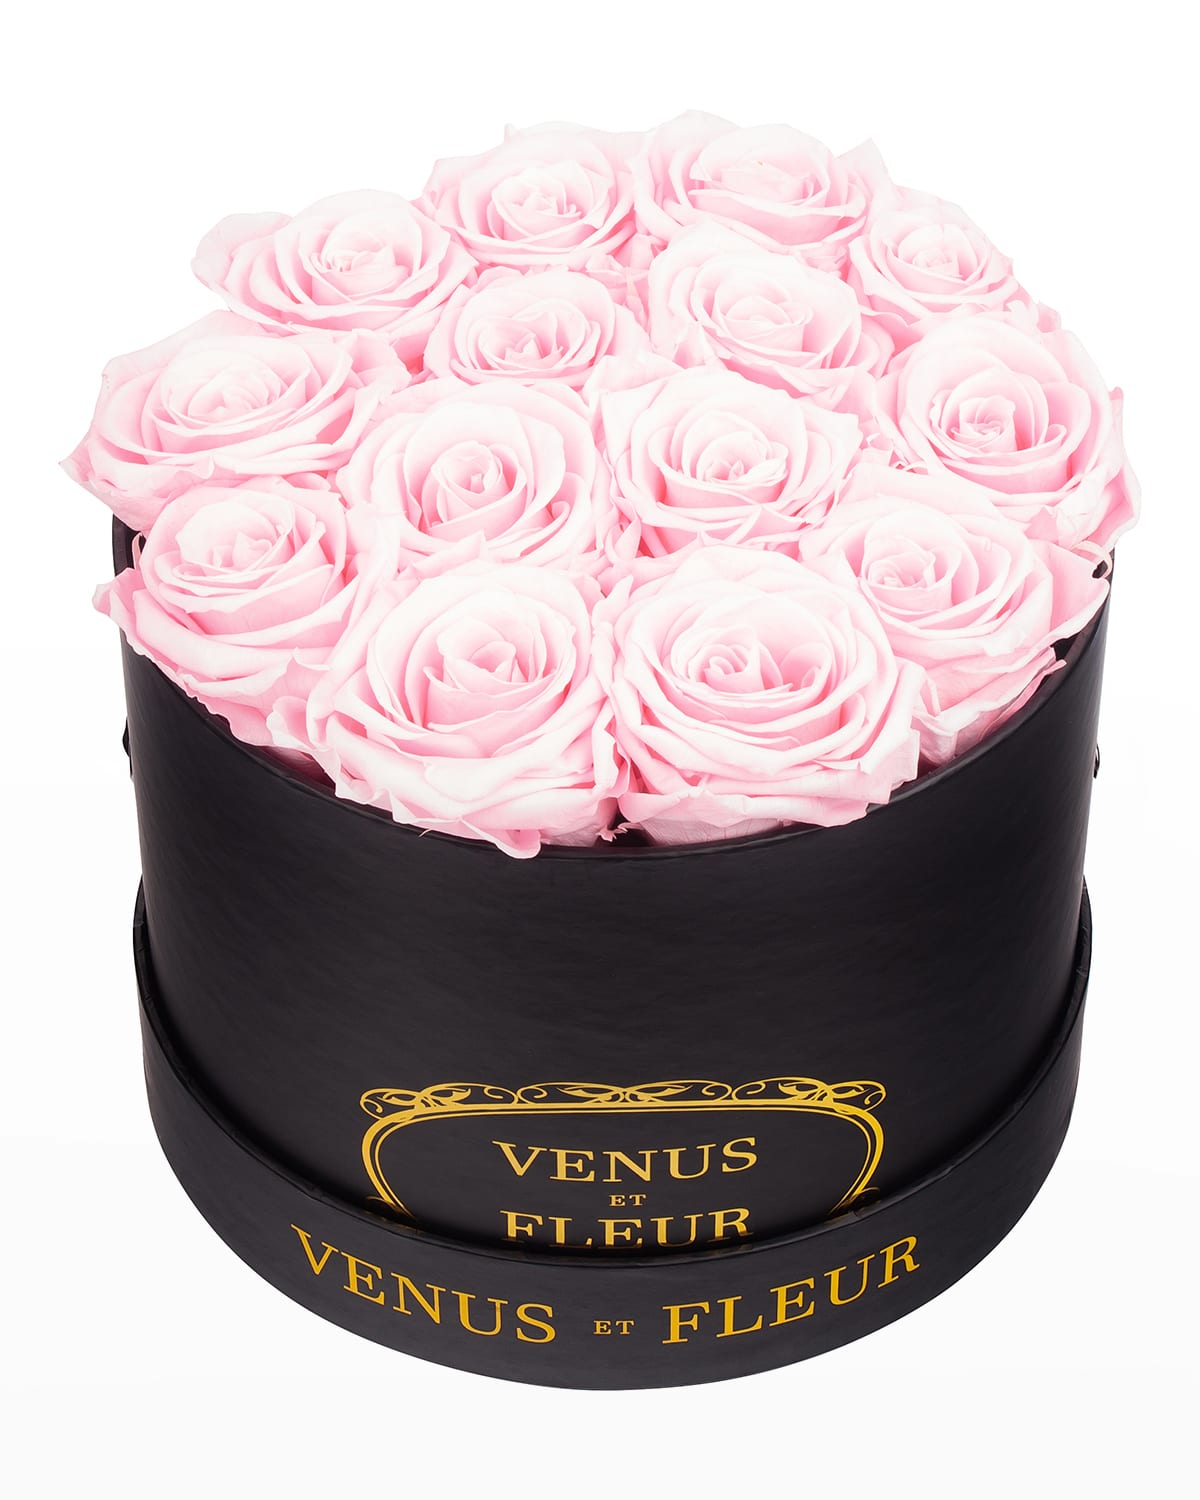 Venus Et Fleur Classic Small Round Rose Box In Pink